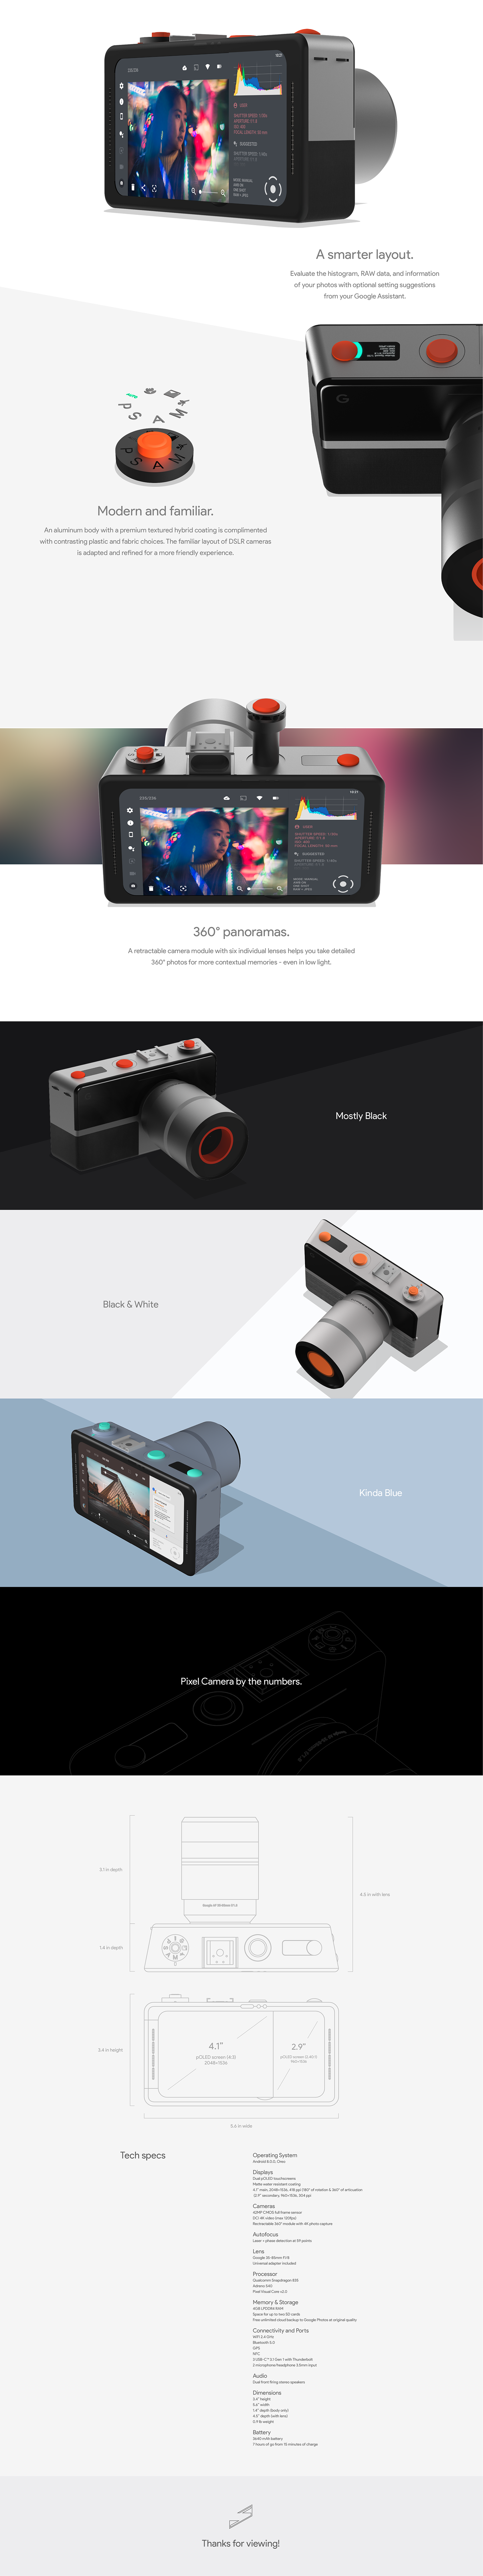 google pixel camera dslr product design  industrial design  artificial intelligence adobeawards